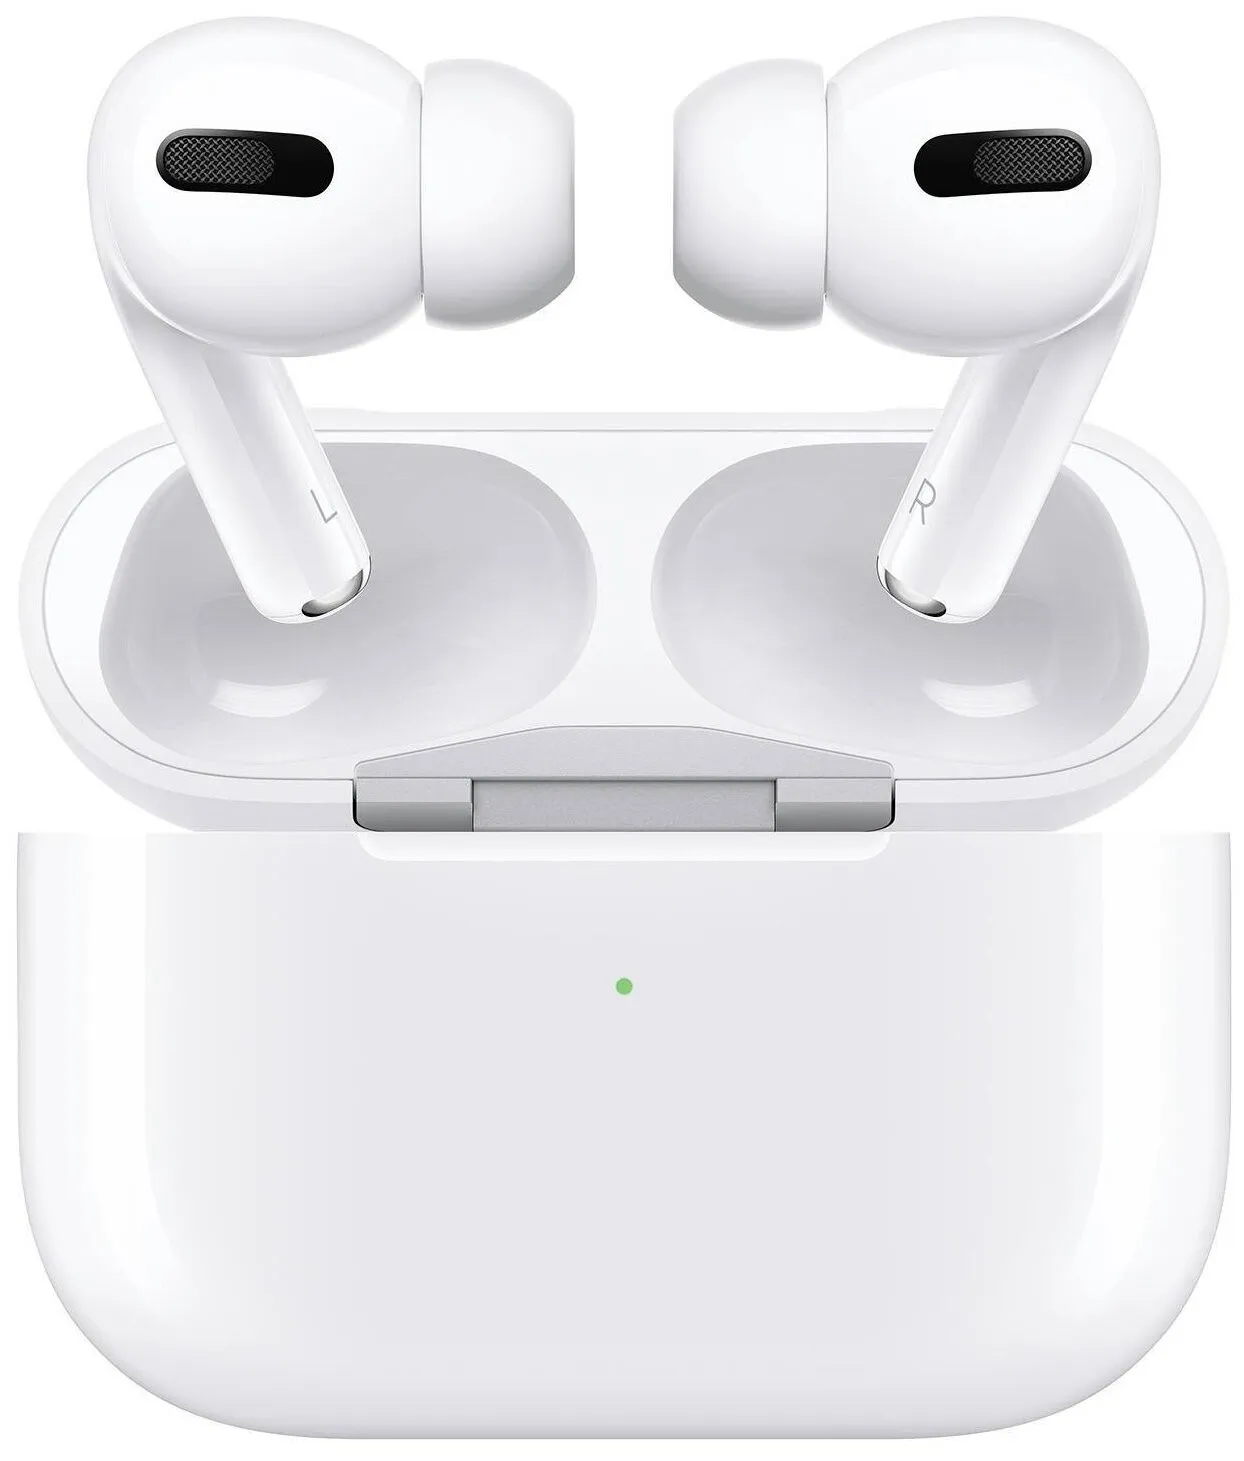 Apple AirPods Pro simsiz minigarnituralari#1